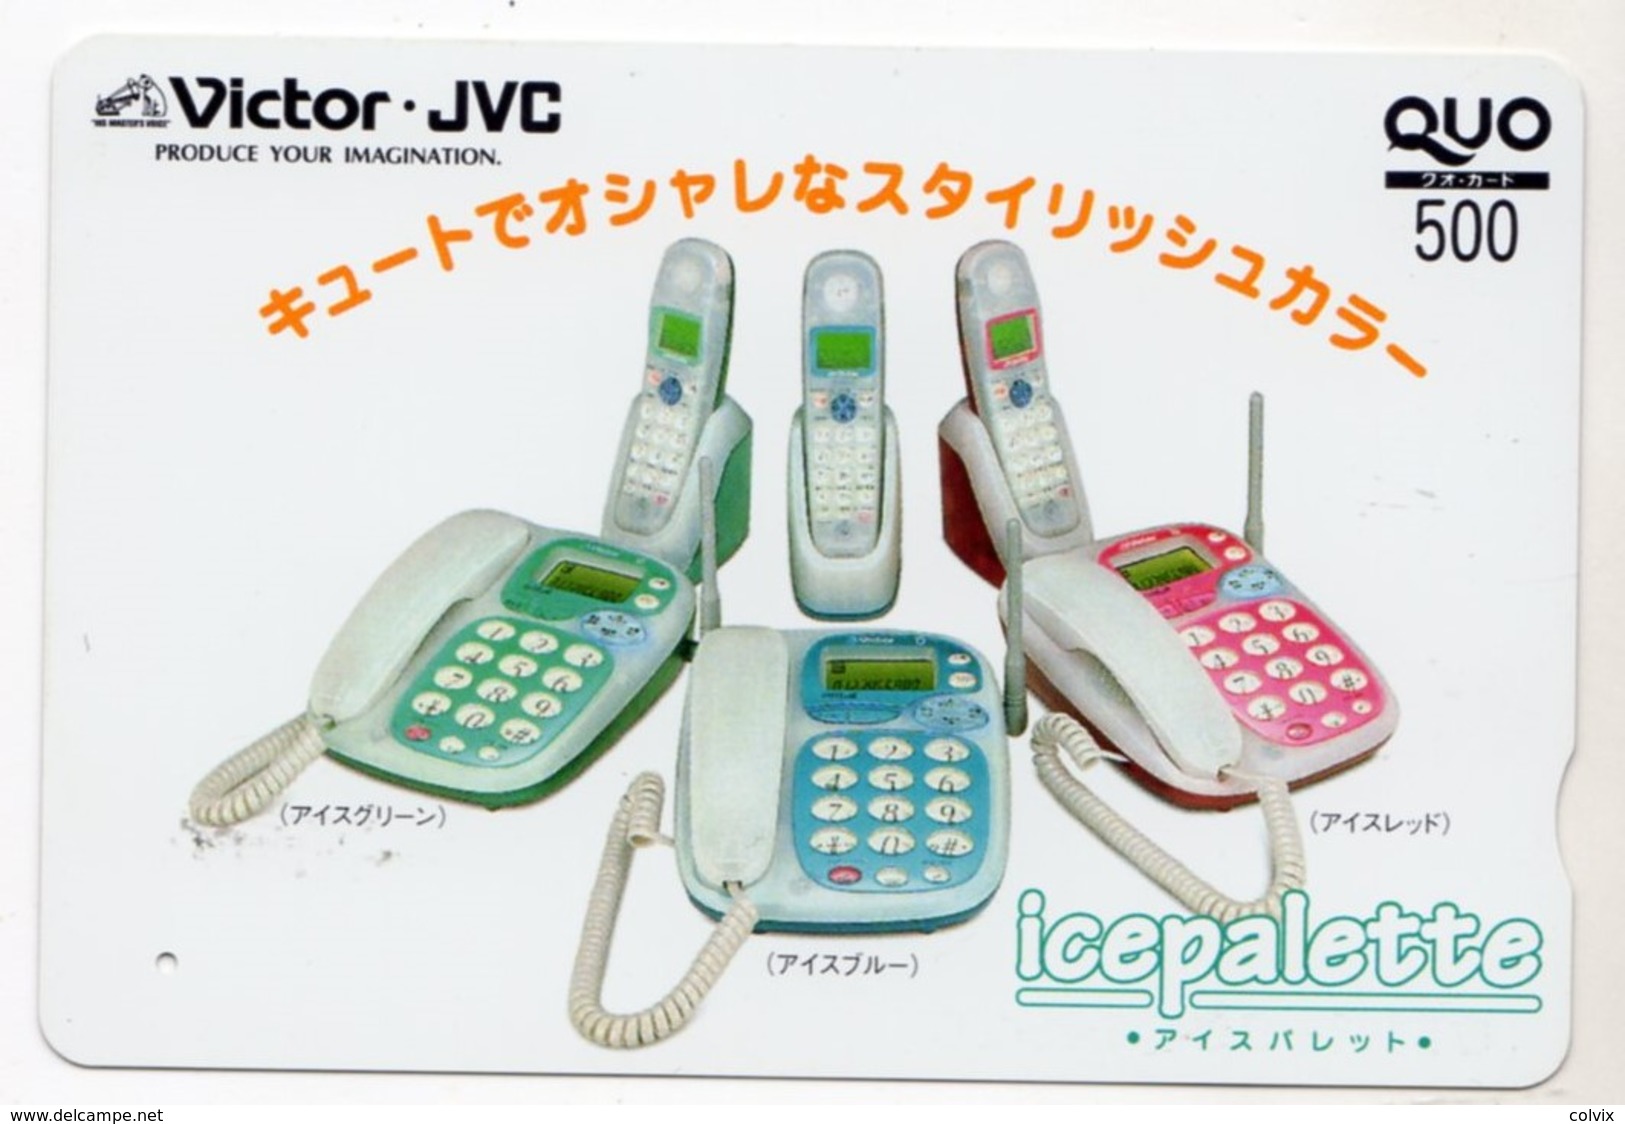 JAPON CARTE QUO PREPAYE VICTOR JVC TELEPHONE - Publicité